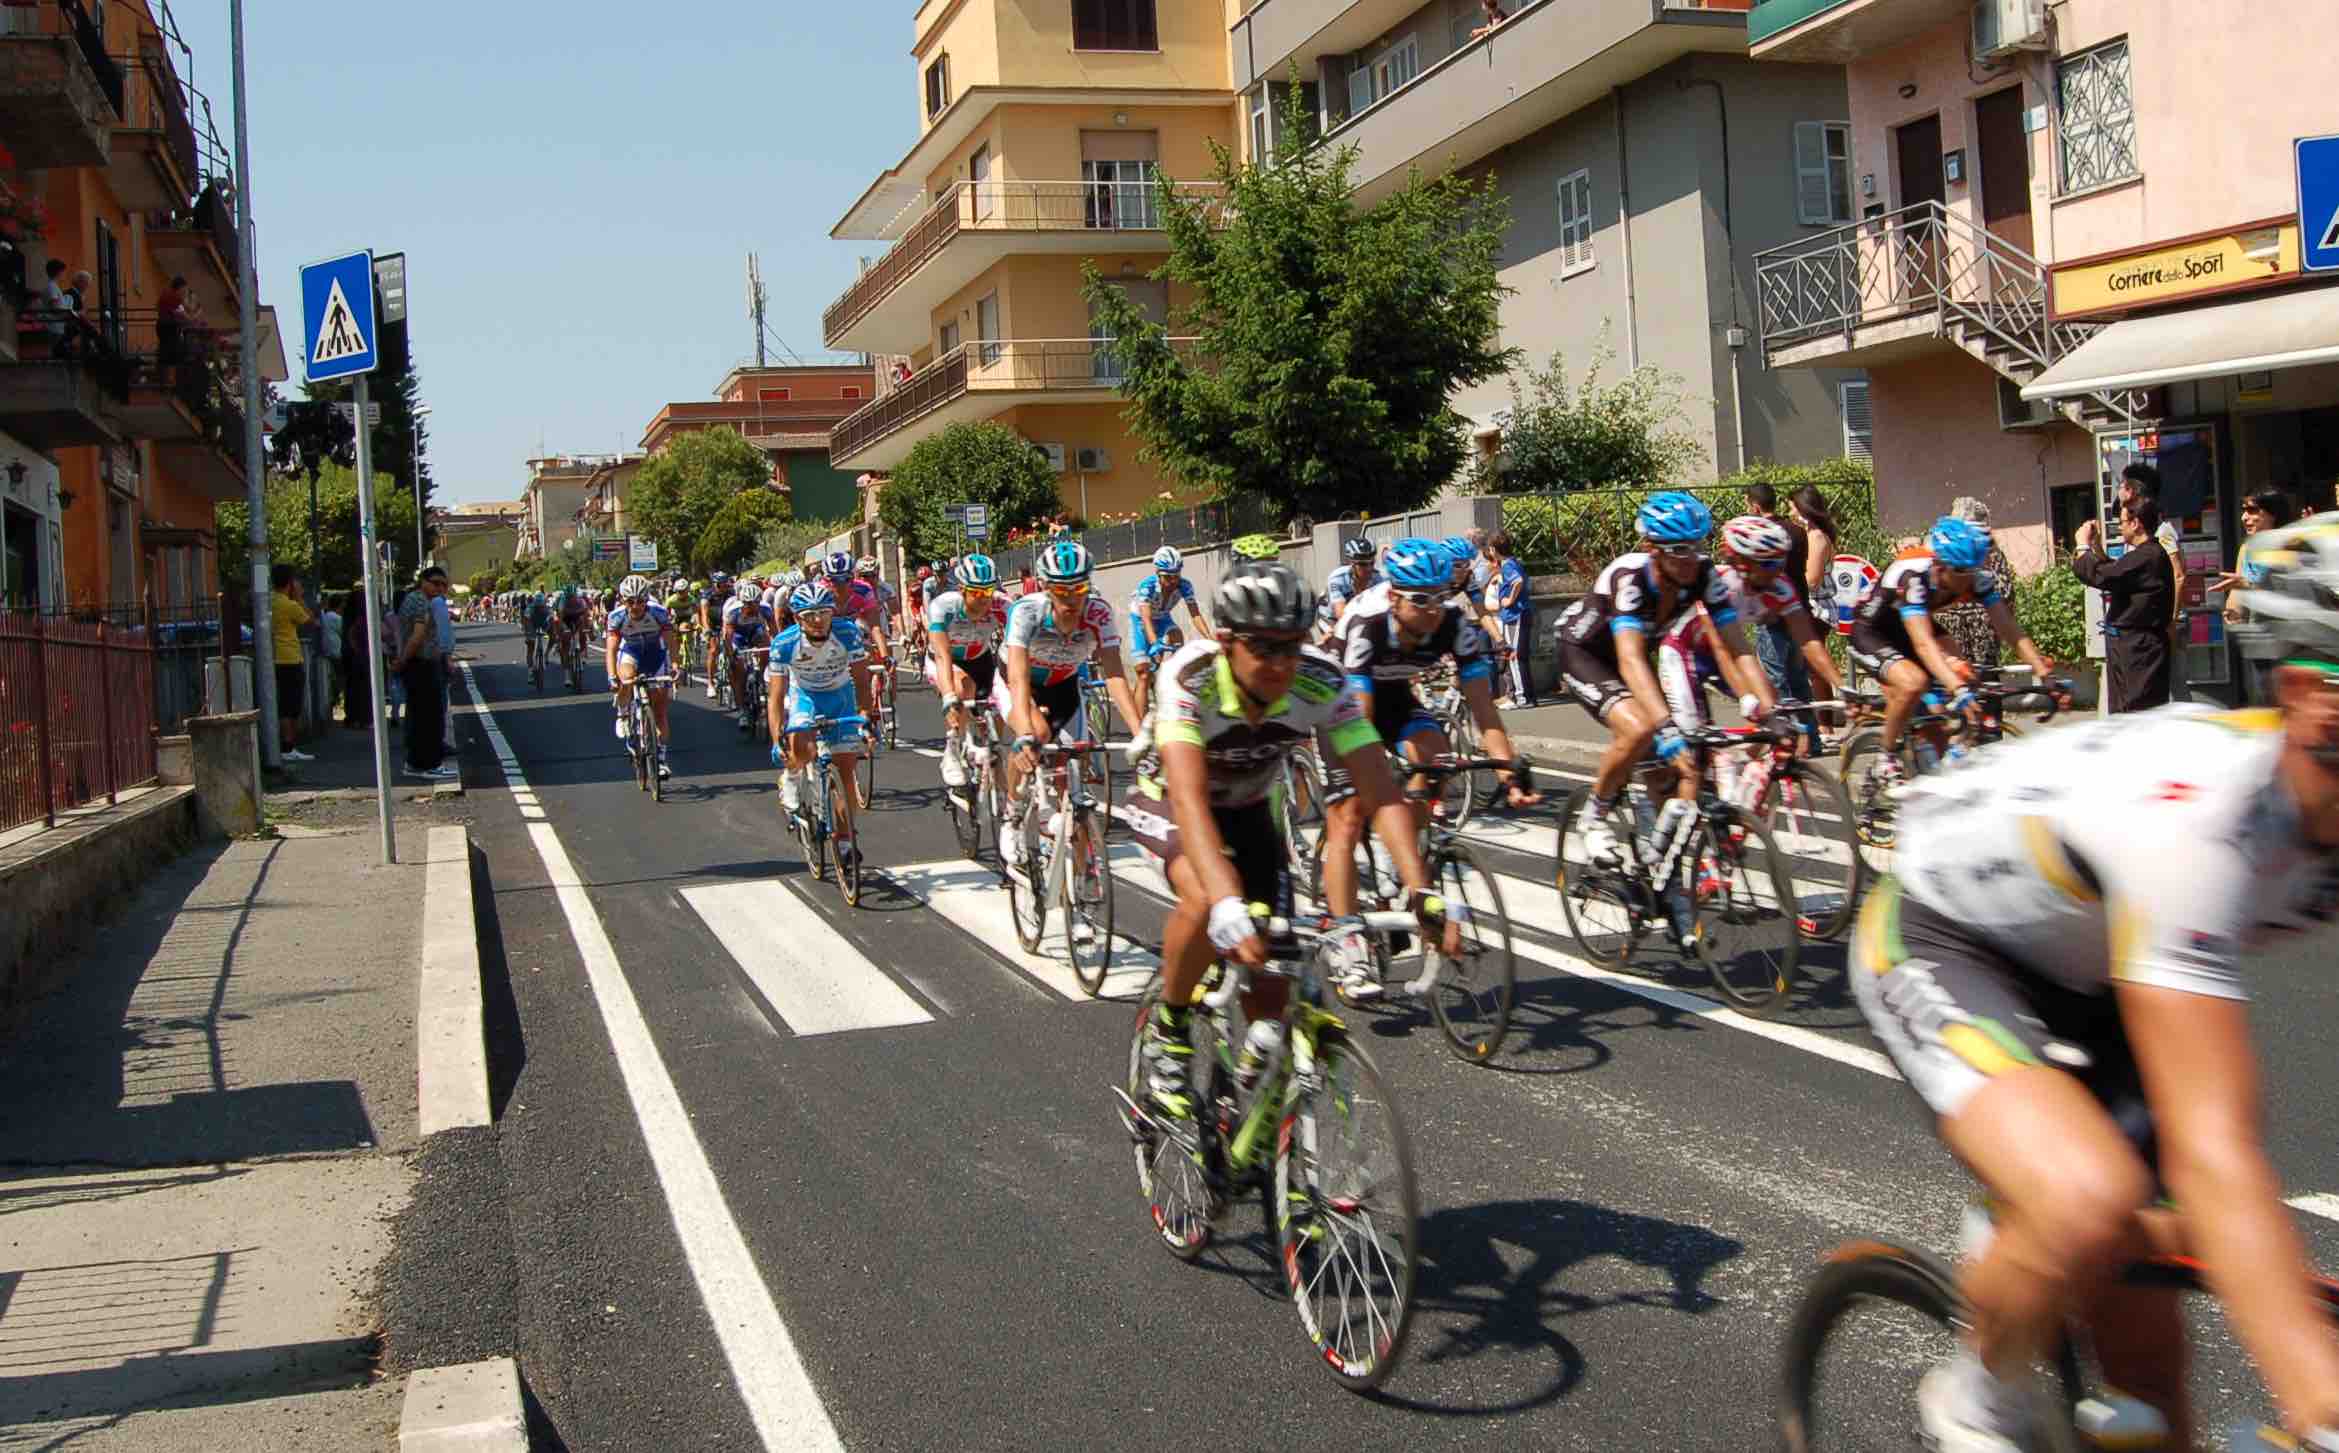 Troppe buche, Guidonia rinuncia al Giro d’Italia. Ammaturo: “Insopportabile”